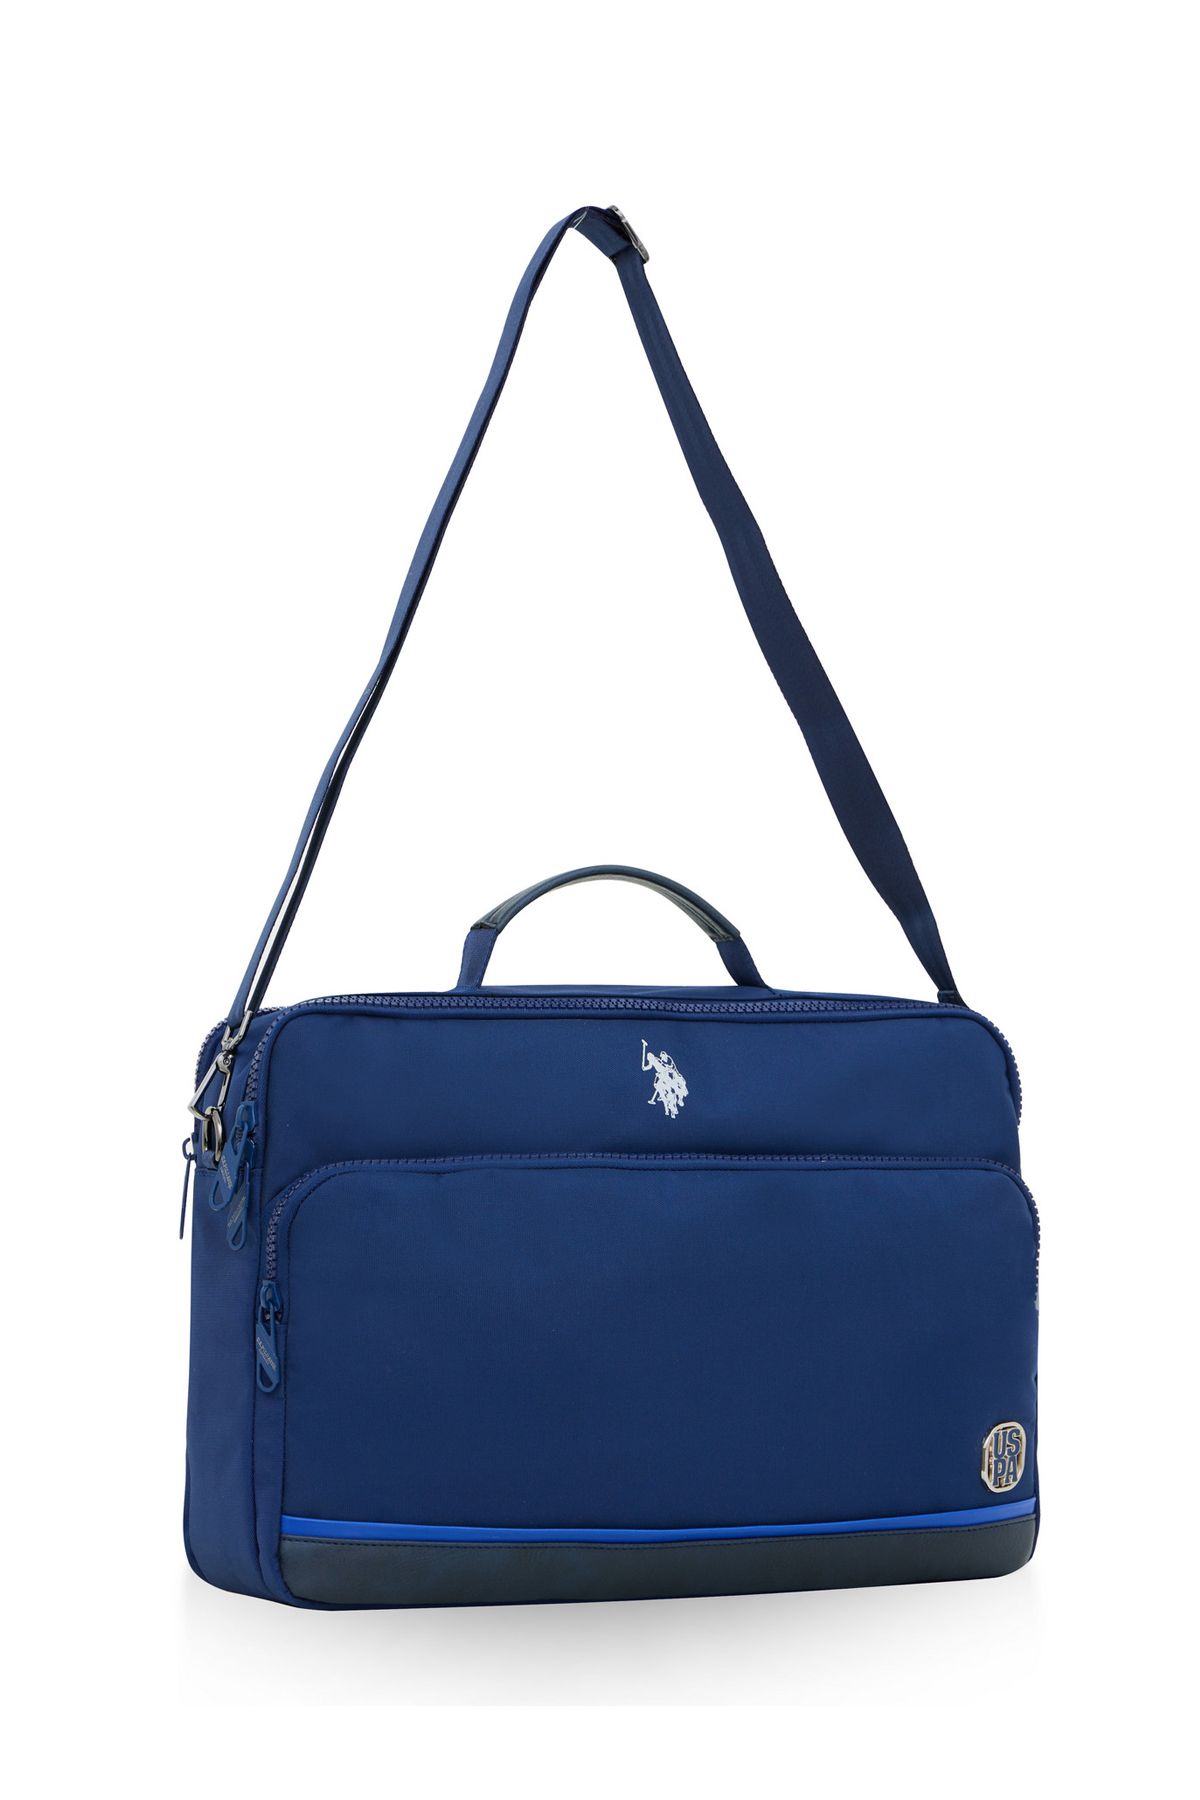 U.S. Polo Assn. U.S. Polo Assn 23628-23631 Evrak çantası laptop çantası askılı çanta Macbook LACİVERT